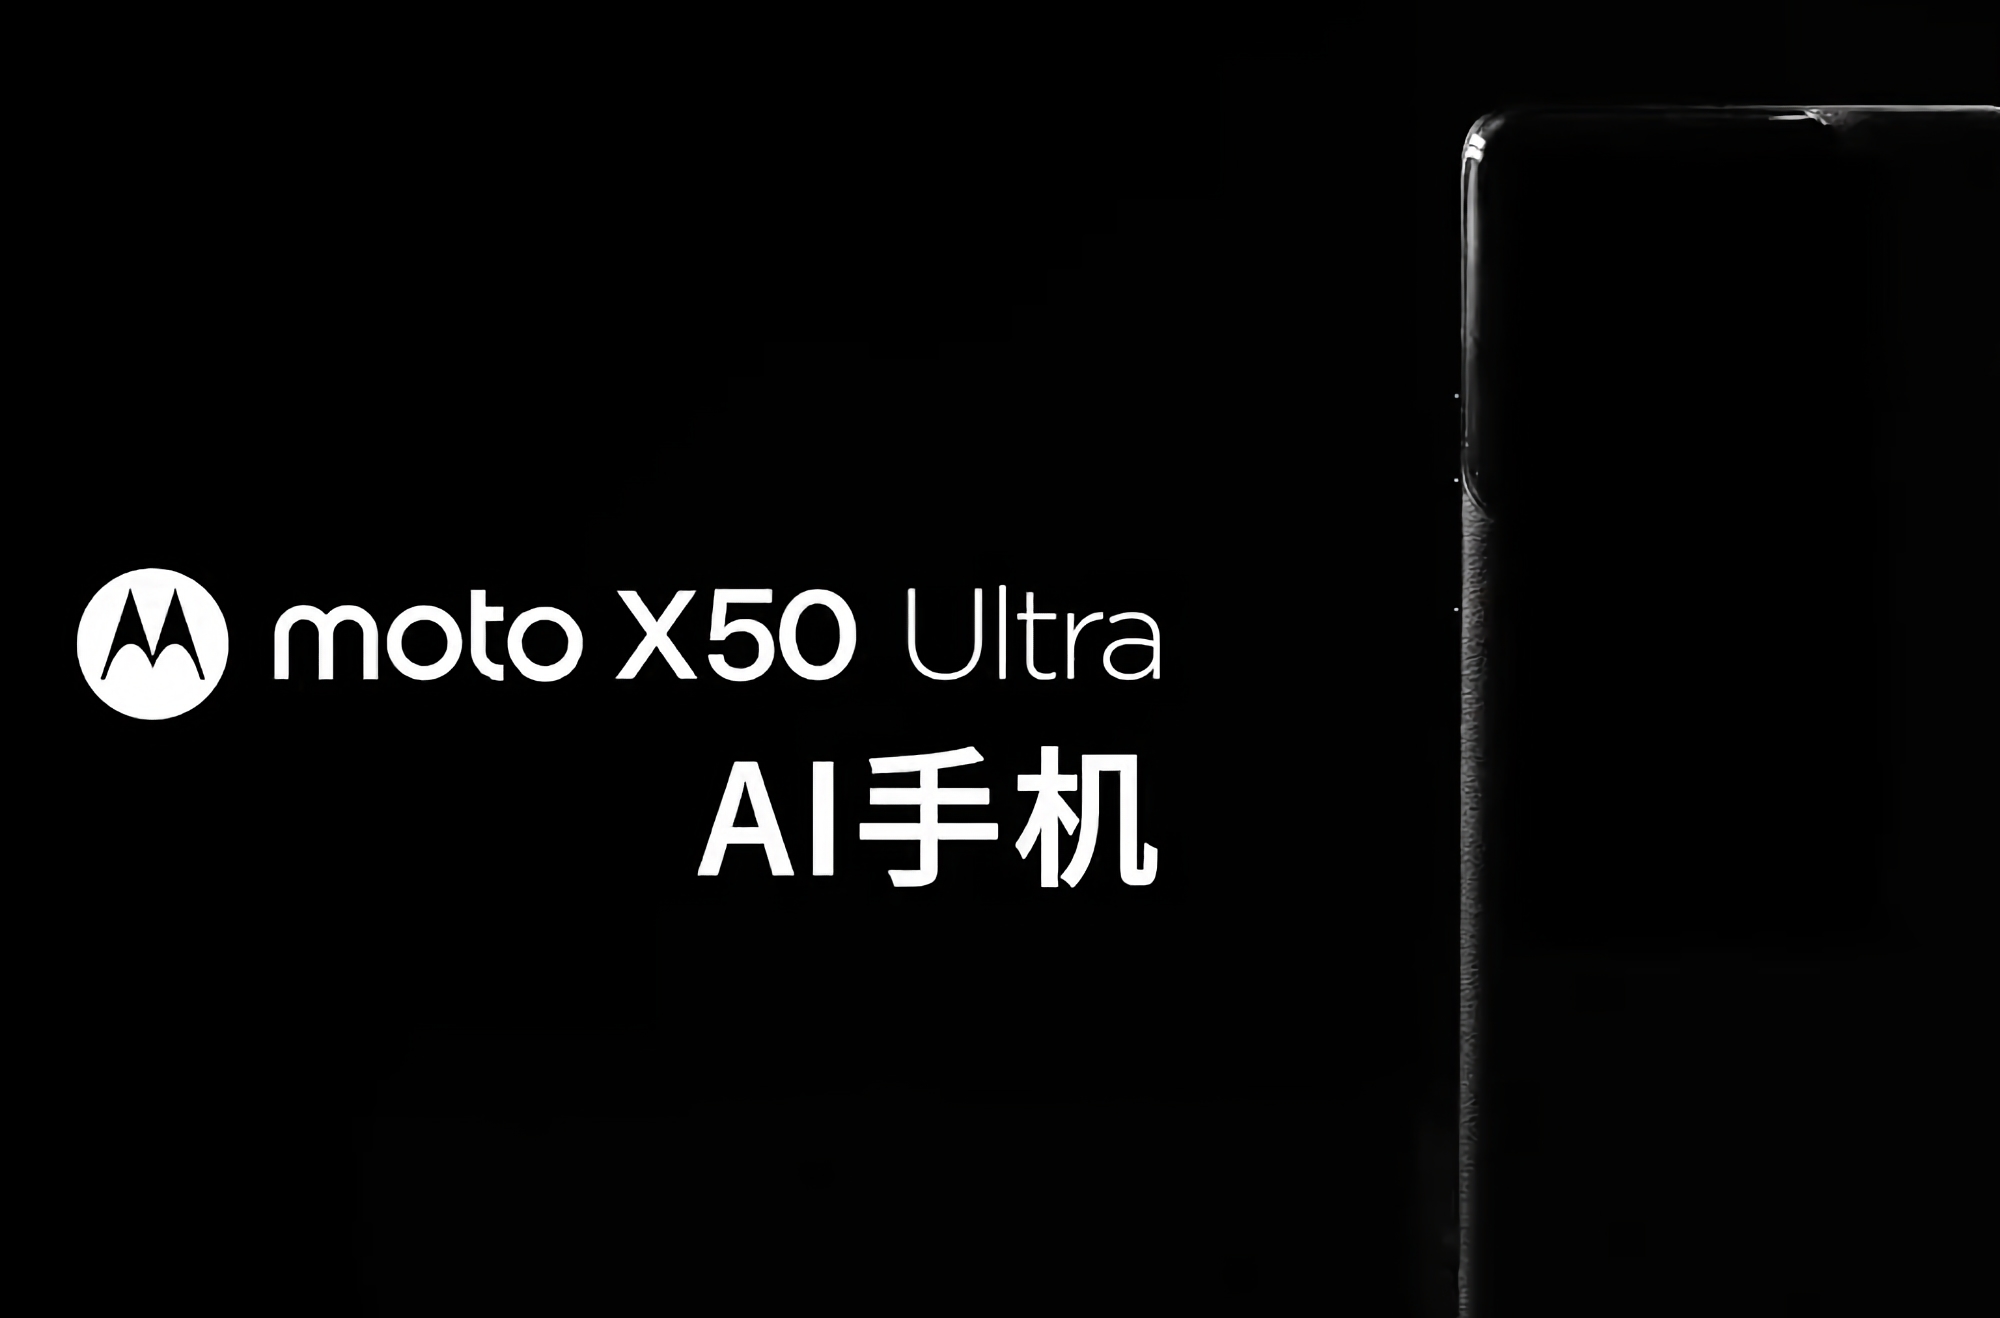 To już oficjalne: Motorola przygotowuje się do wydania flagowego smartfona Moto X50 Ultra z funkcjami AI